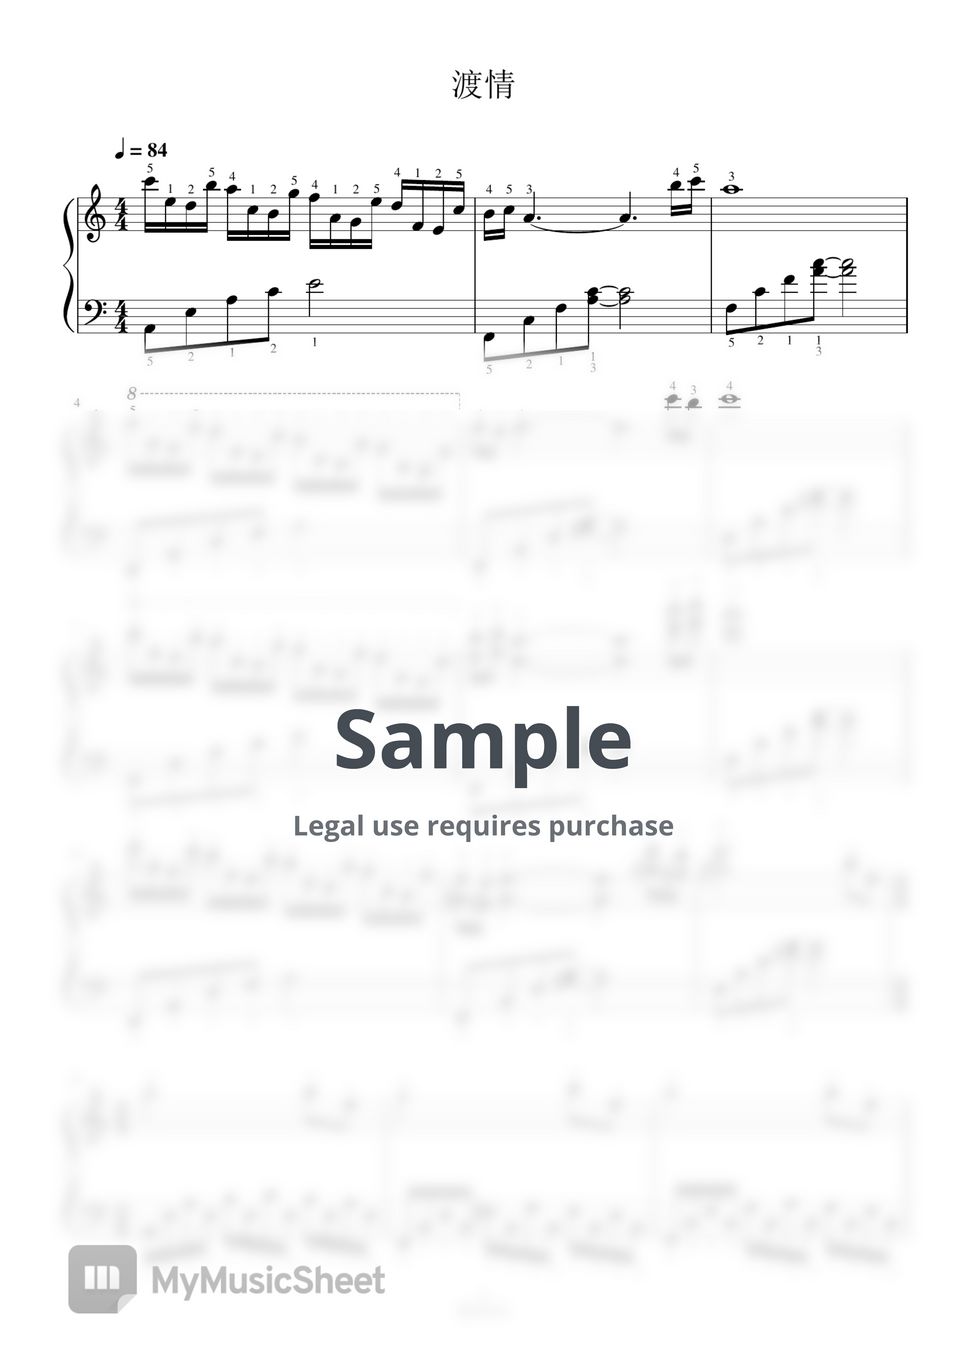 古月 - 渡情-全指法钢琴谱高清正版完整版 (Full Fingering Piano Score) by 紫韵音乐